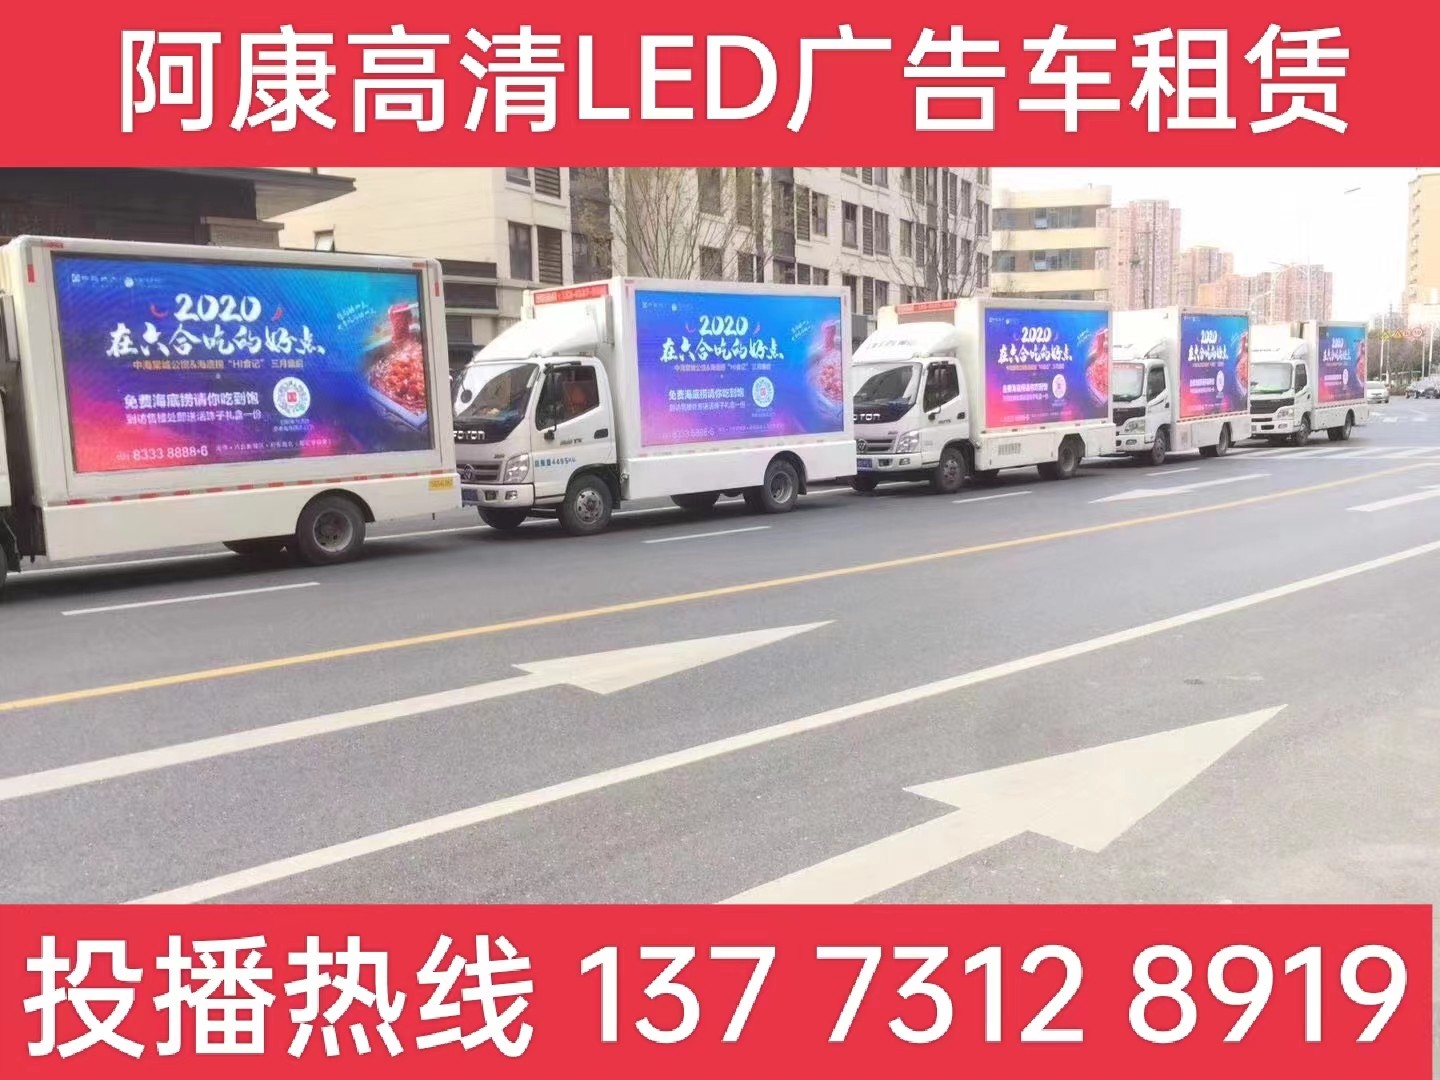 丹阳宣传车出租-海底捞LED广告